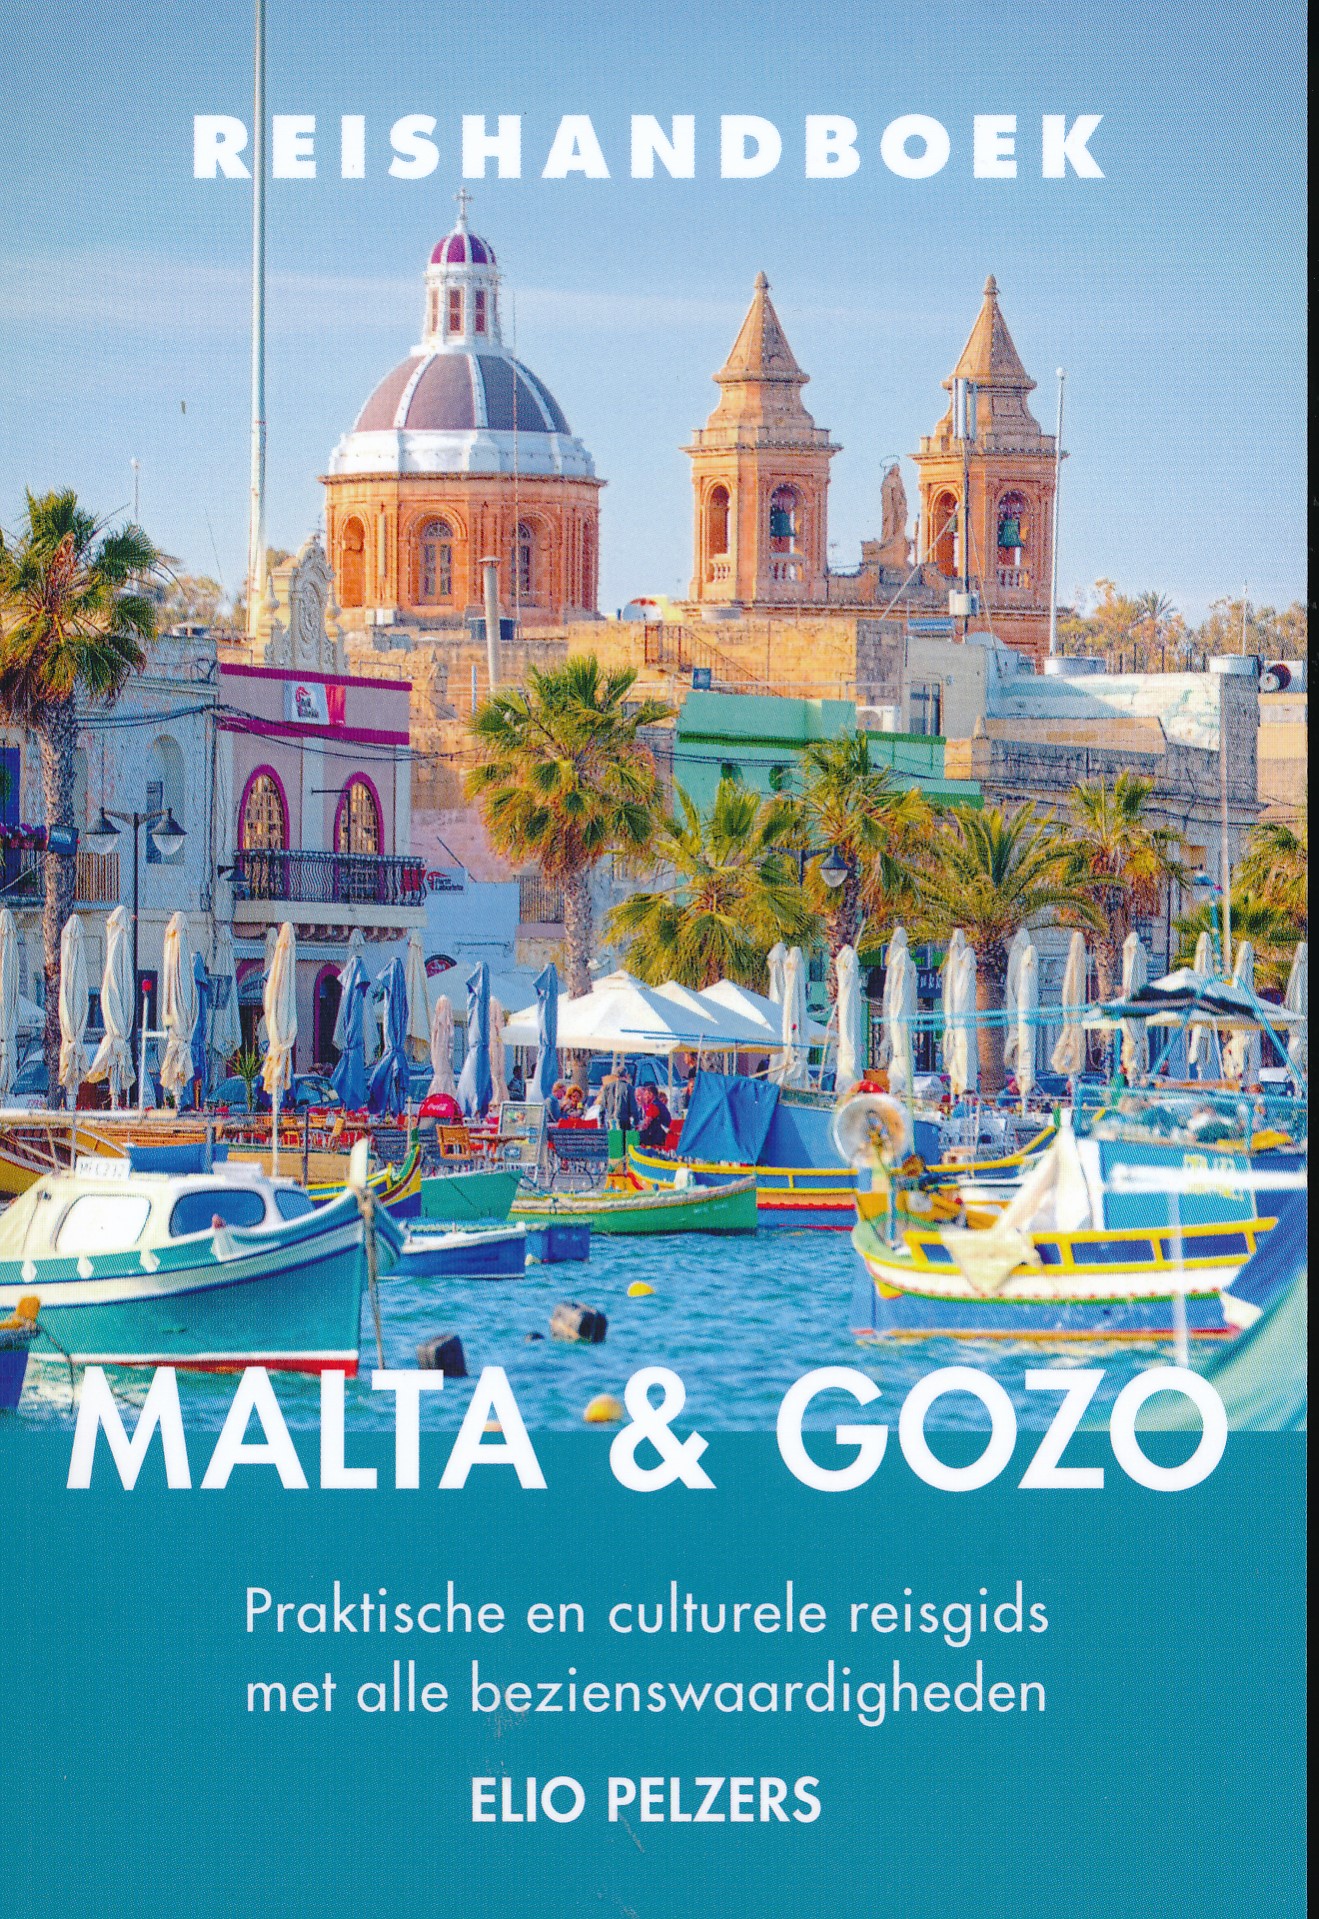 Reisgids Reishandboek Malta en Gozo | Elmar de zwerver